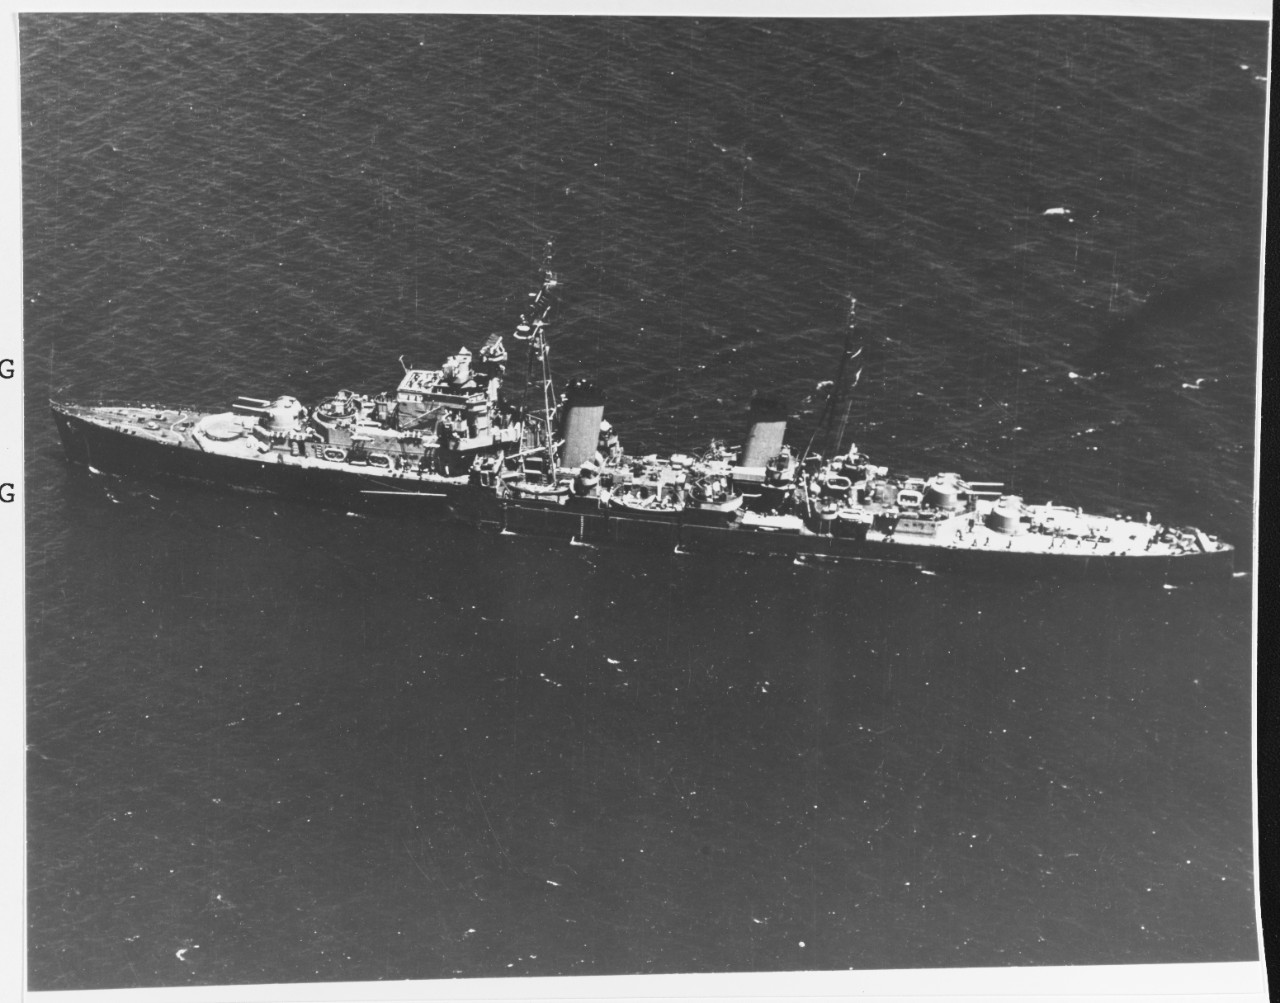 HMA PHOEBE (British cruiser, 1939)